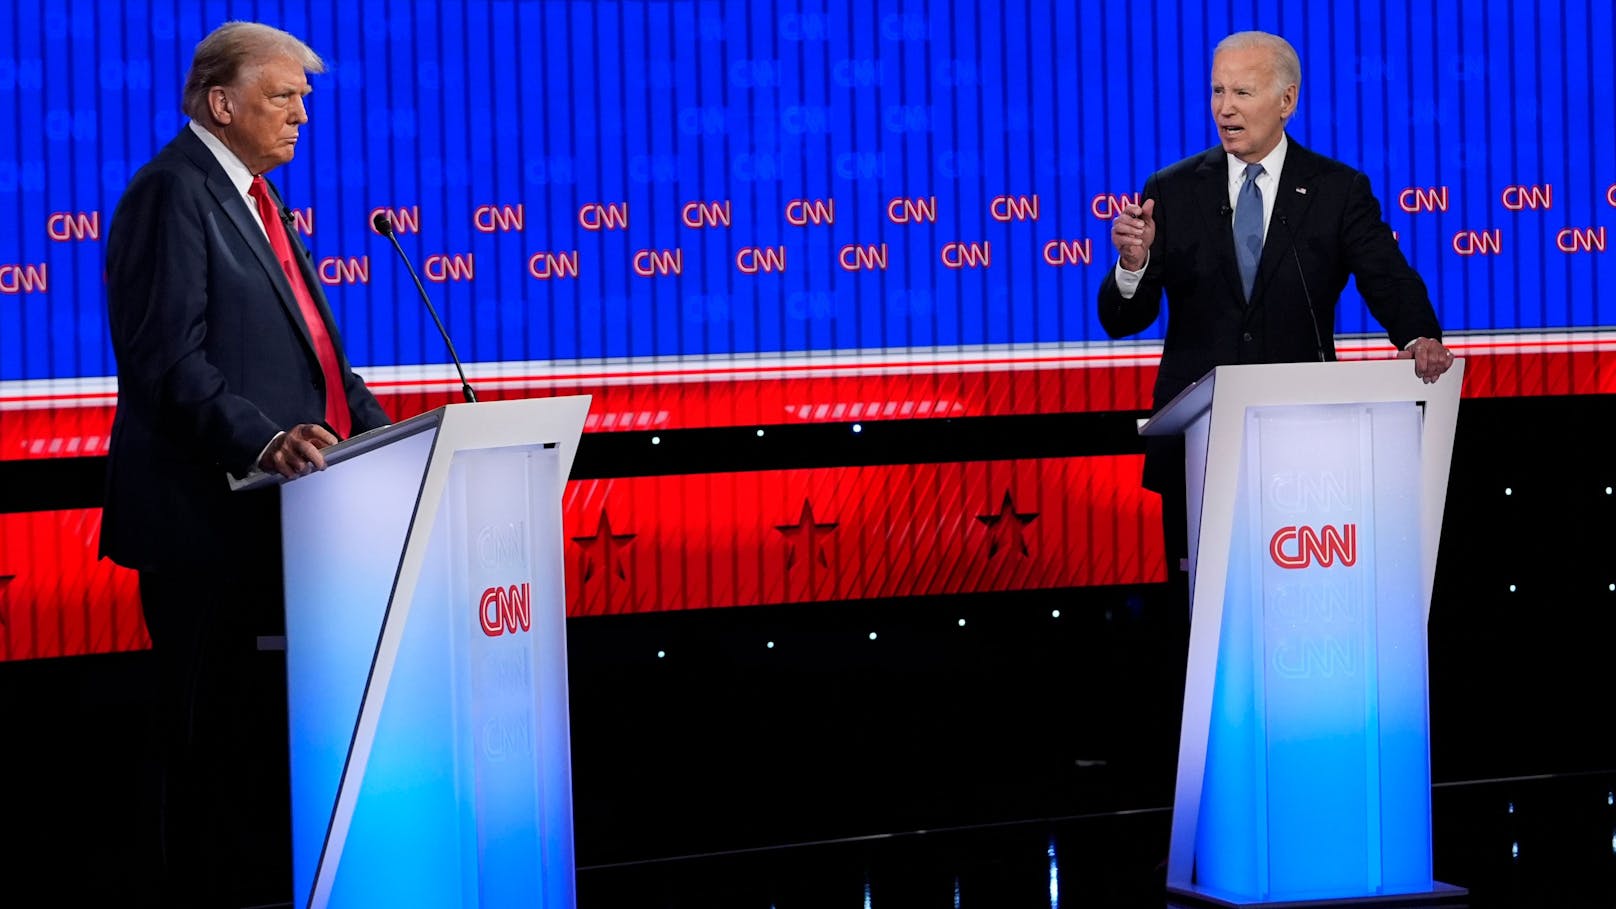 Die erste Debatte zwischen Joe Biden und Donald Trump lief unter neuen Regeln und versprach hitzige Diskussionen – auch um das hohe Alter der beiden. "Heute" hat die besten Bilder des TV-Duells.